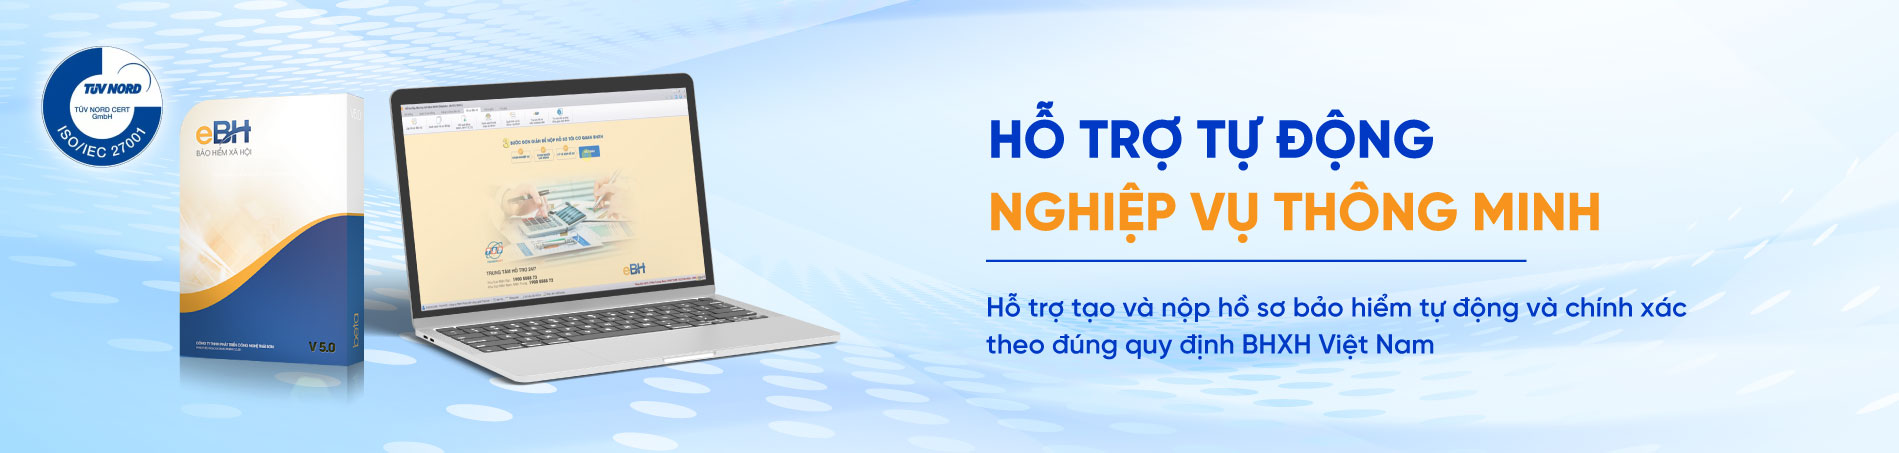 Hỗ trợ tạo và lập hồ sơ tự động theo đúng quy định của BHXH Việt Nam